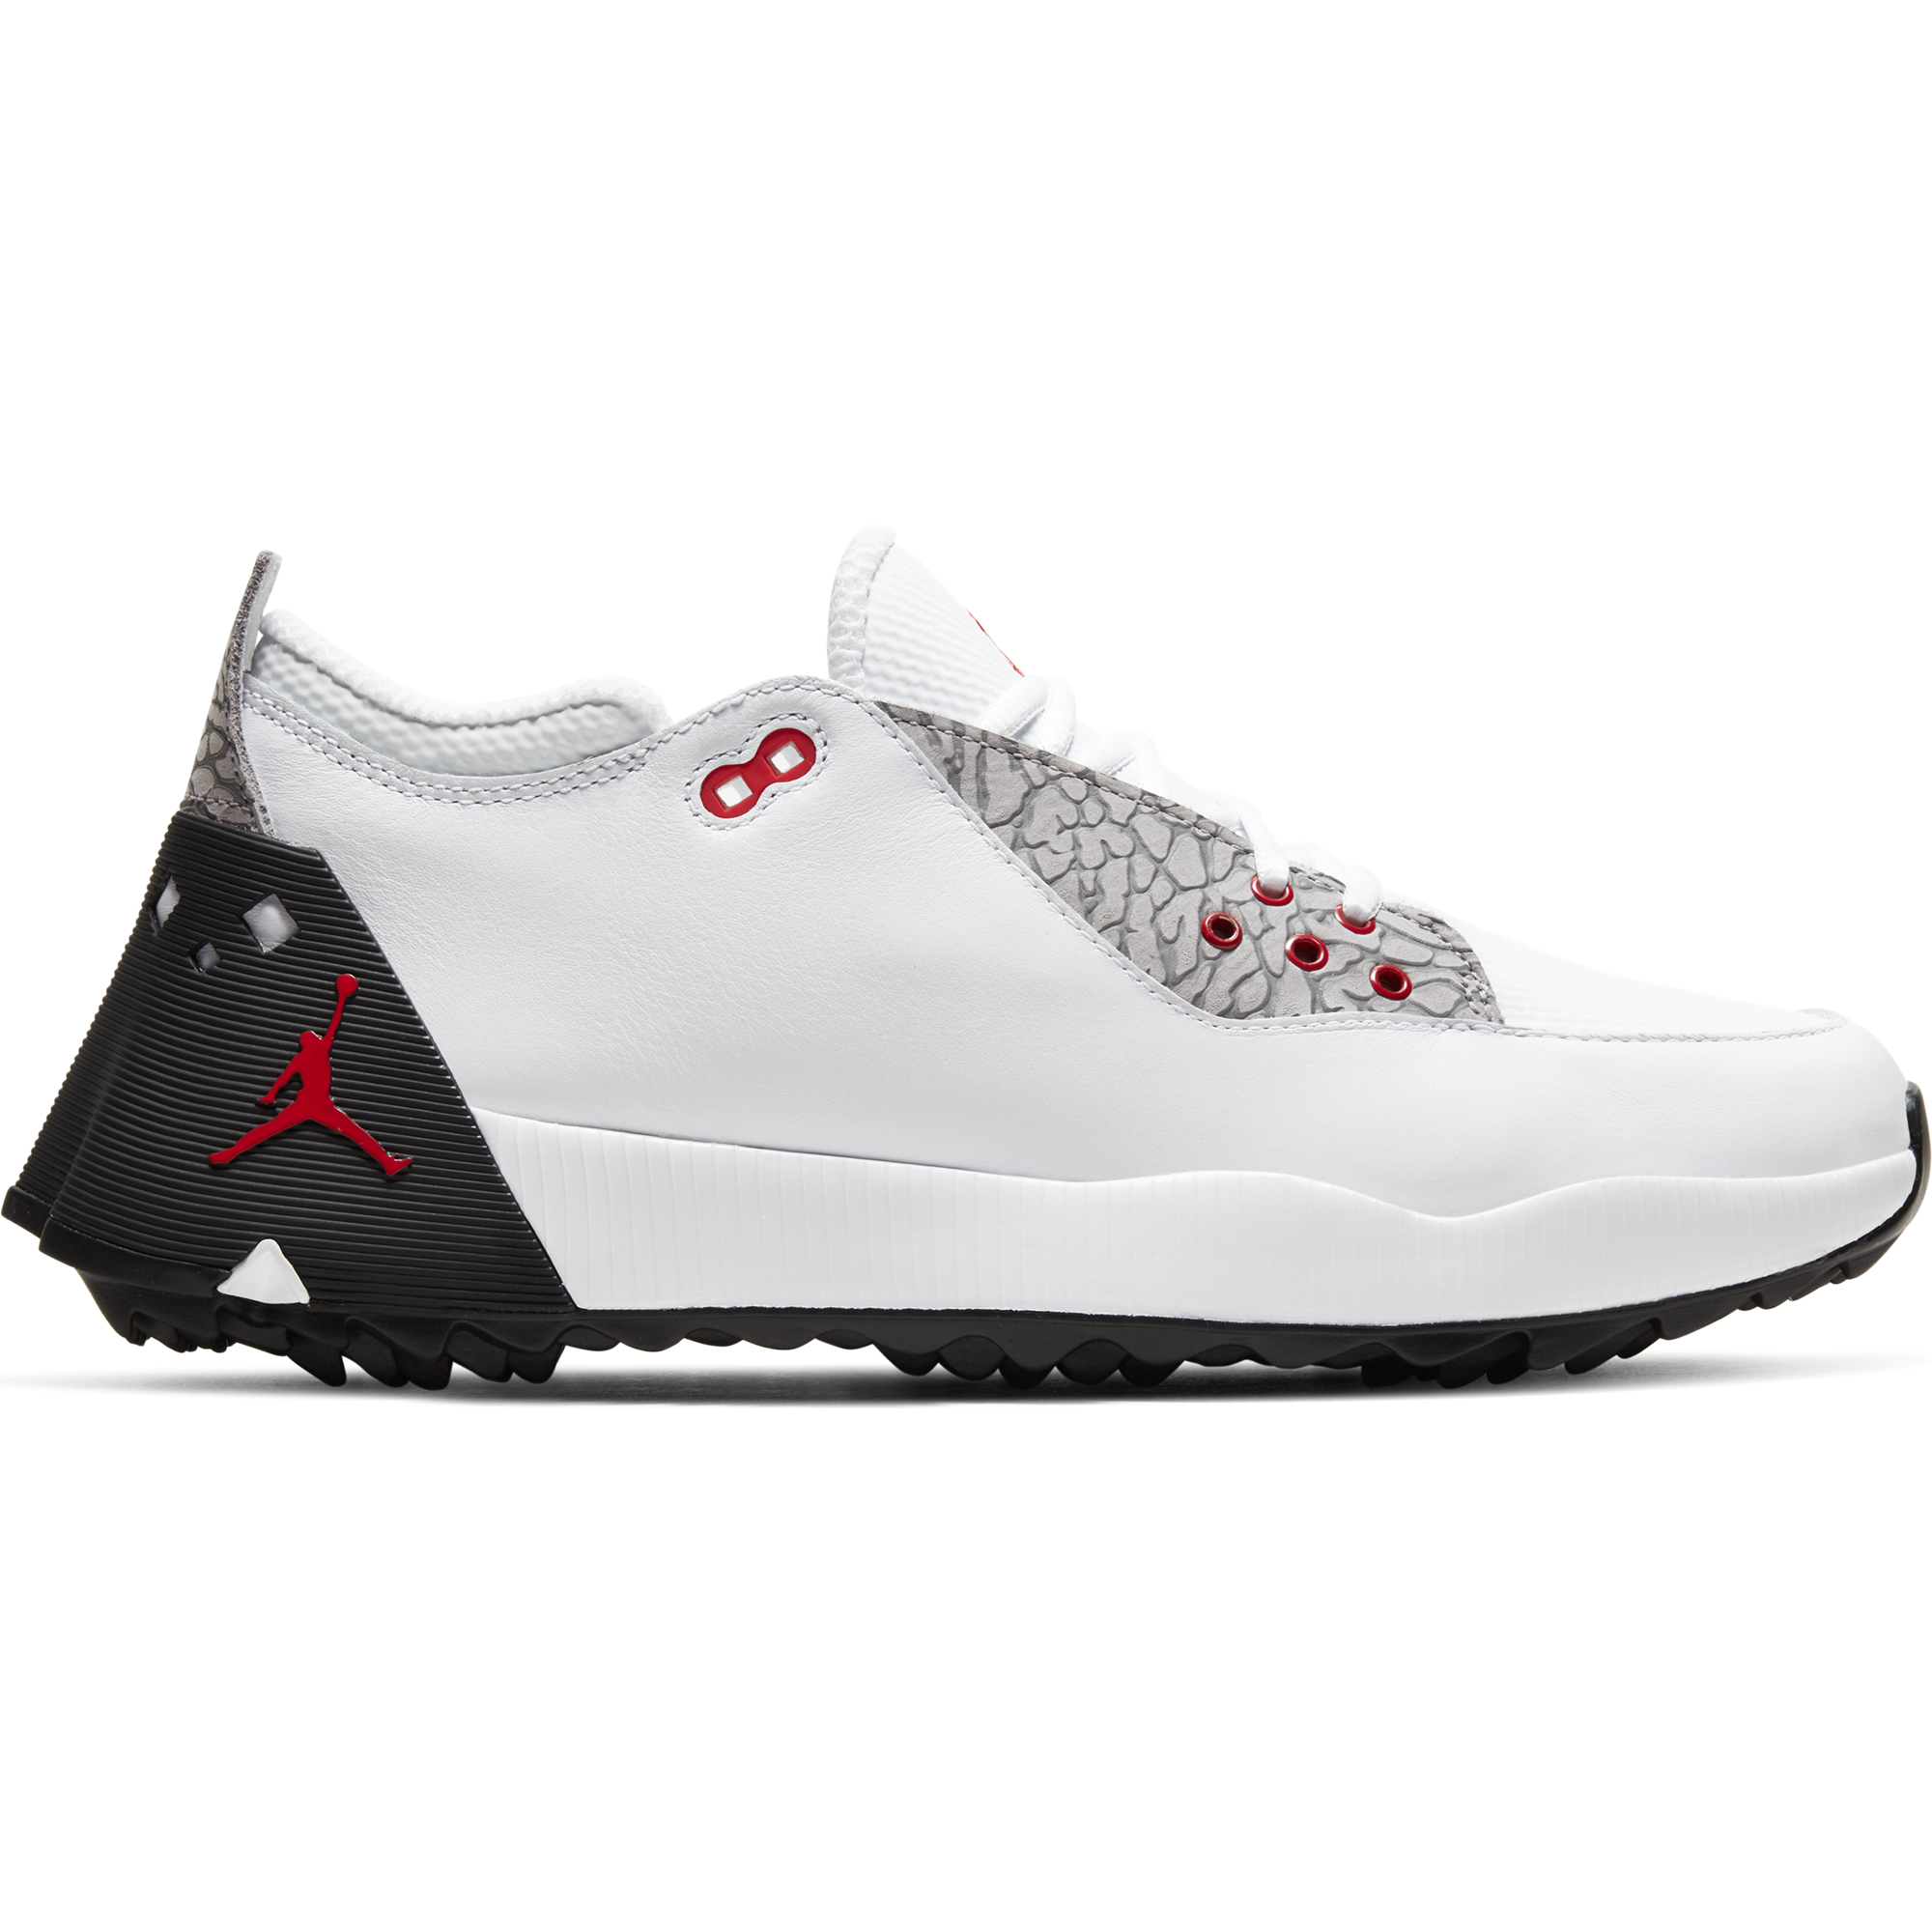 Nike Jordan ADG 2 Men's Golf Shoe - White/Red | PGA TOUR Superstore